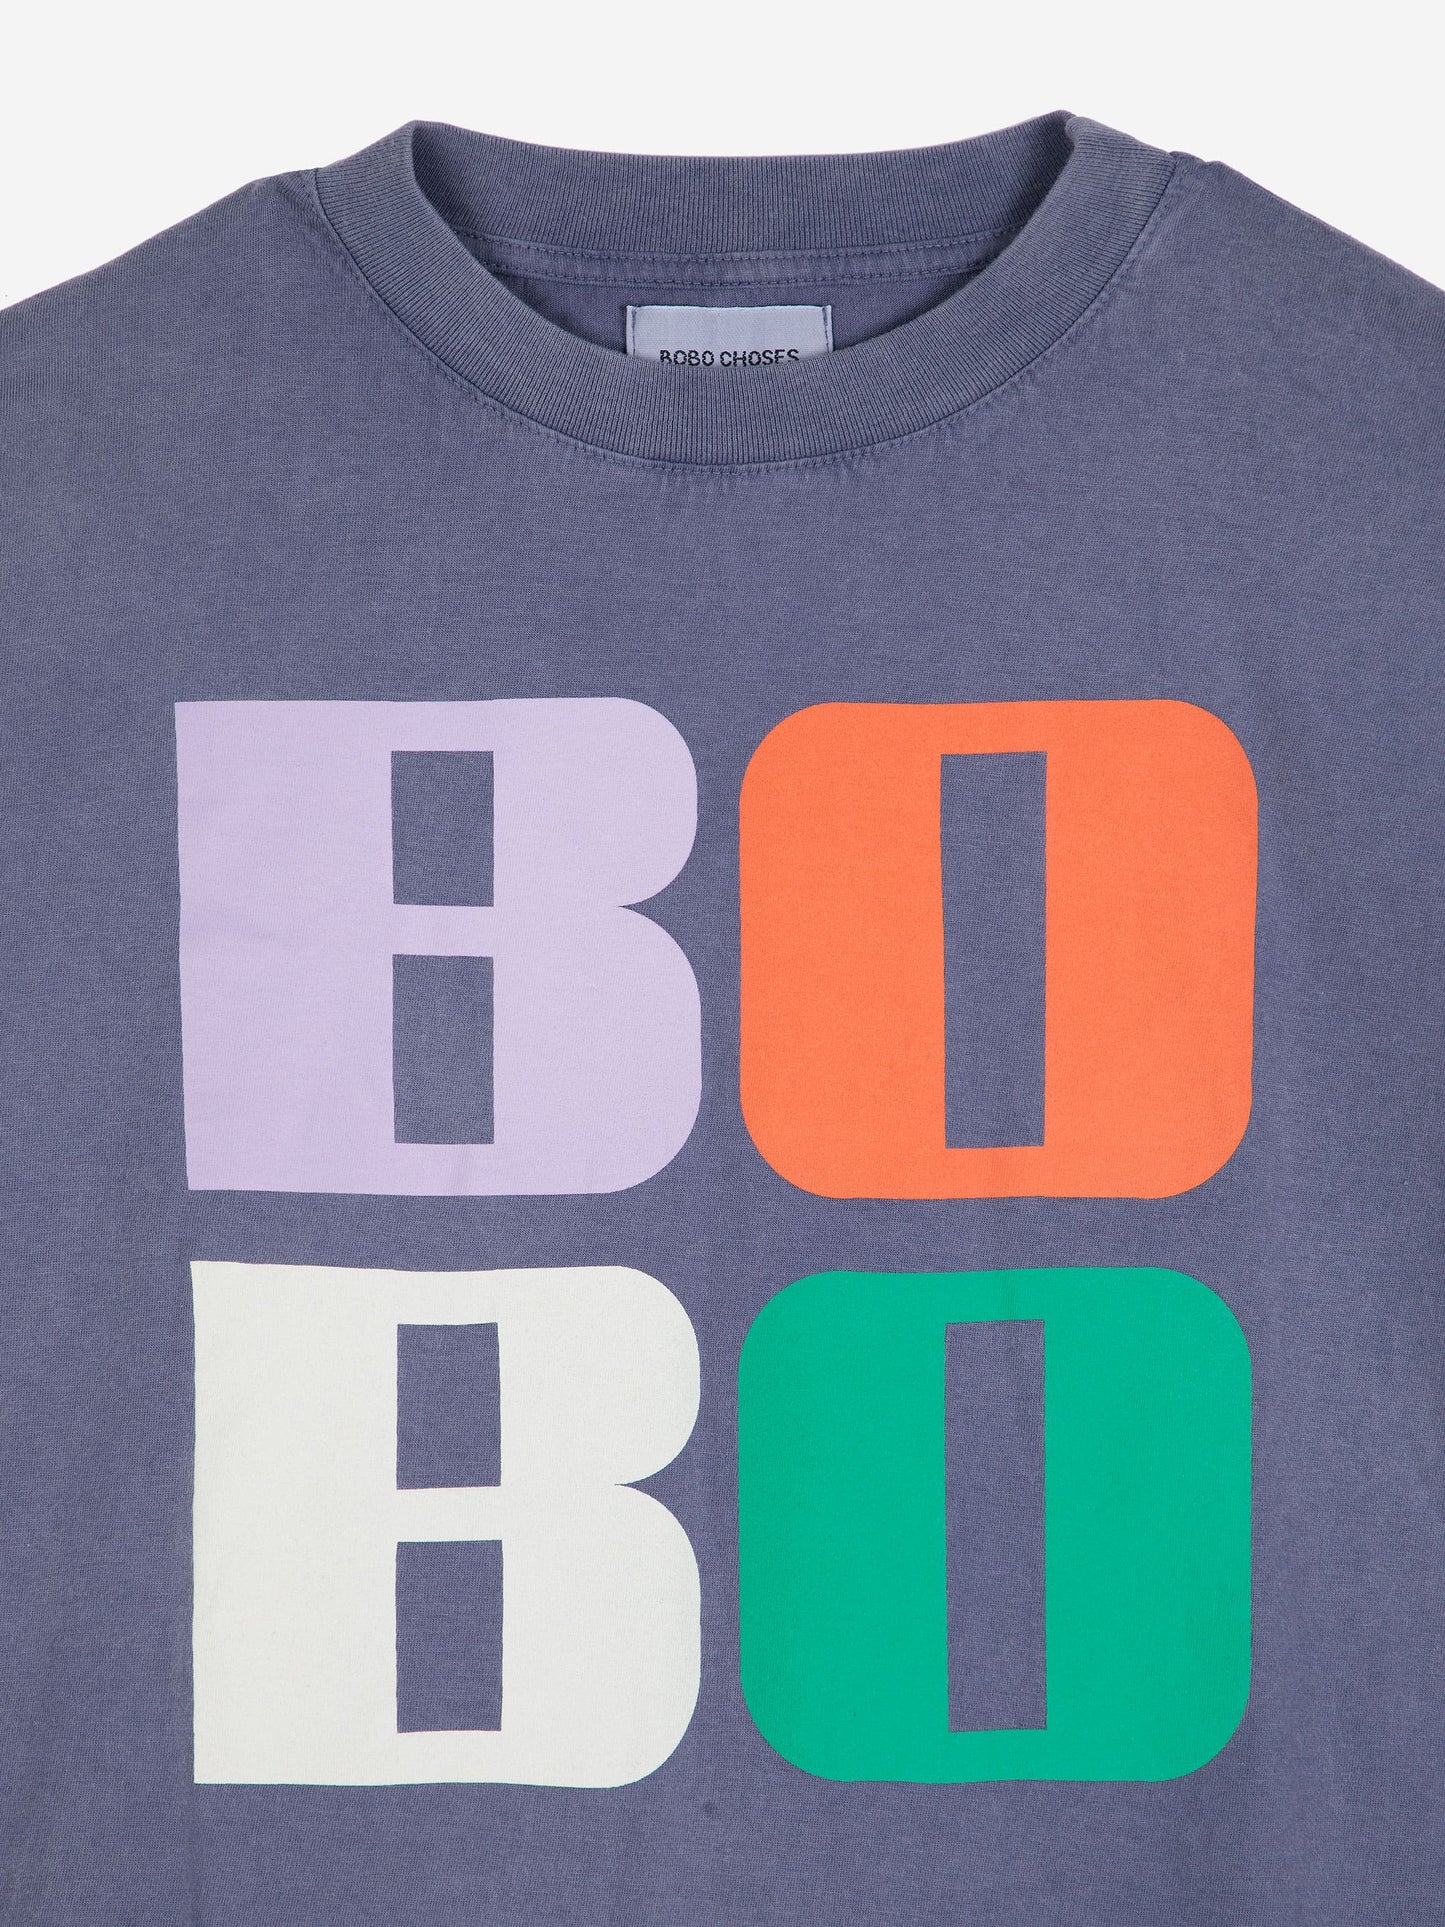 Bobo Bright T-shirt